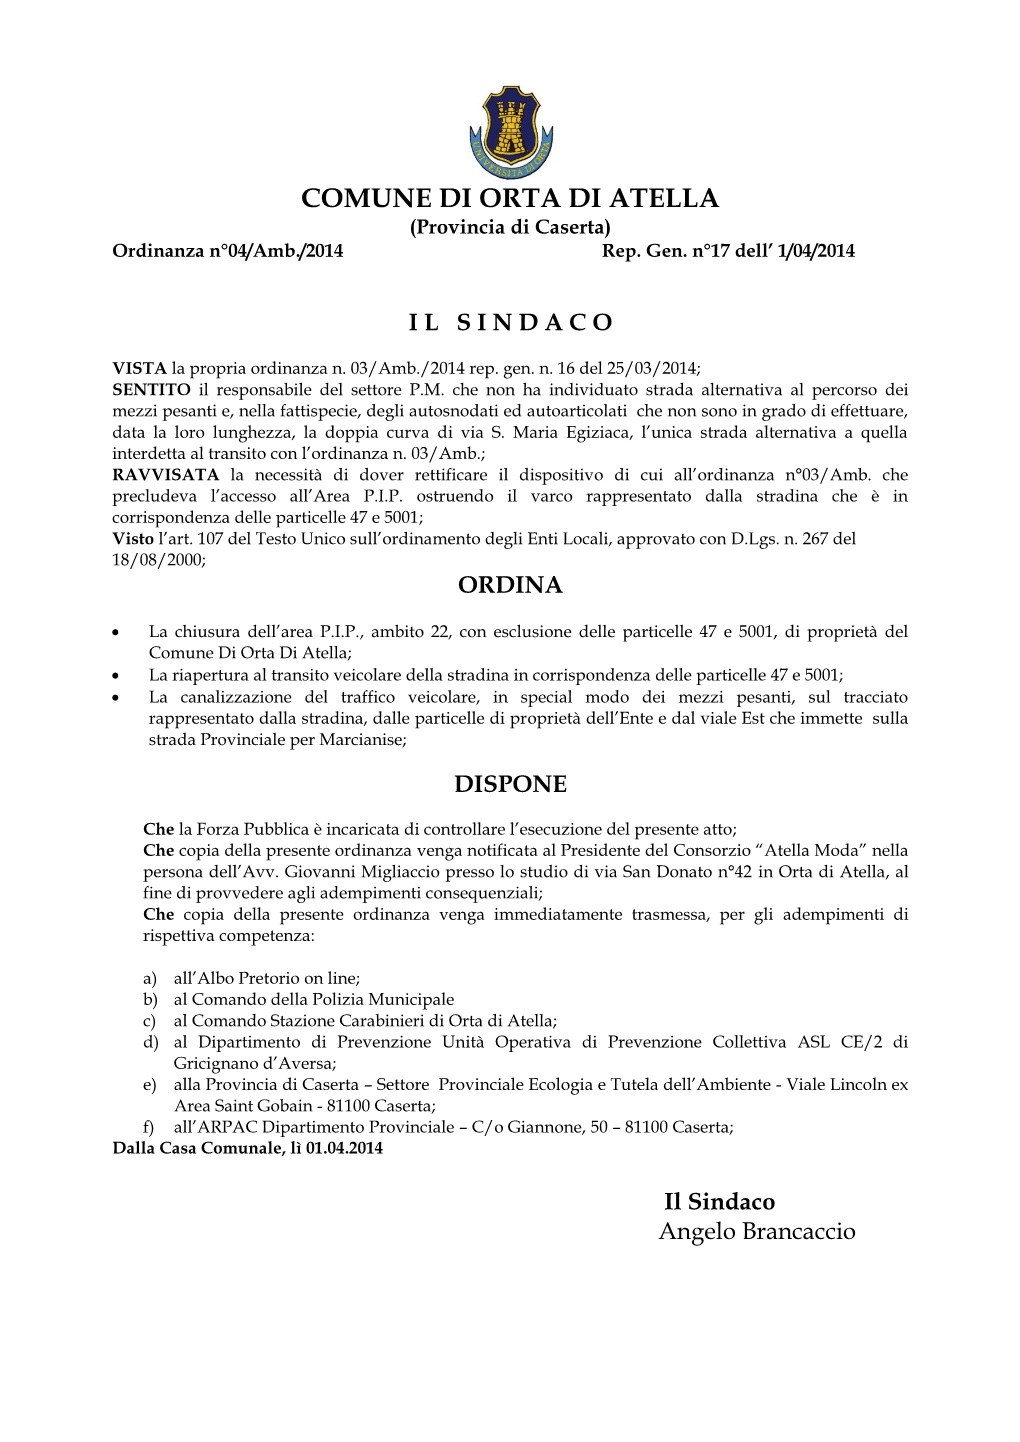 COMUNE DI ORTA DI ATELLA (Provincia Di Caserta) Ordinanza N°04/Amb./2014 Rep